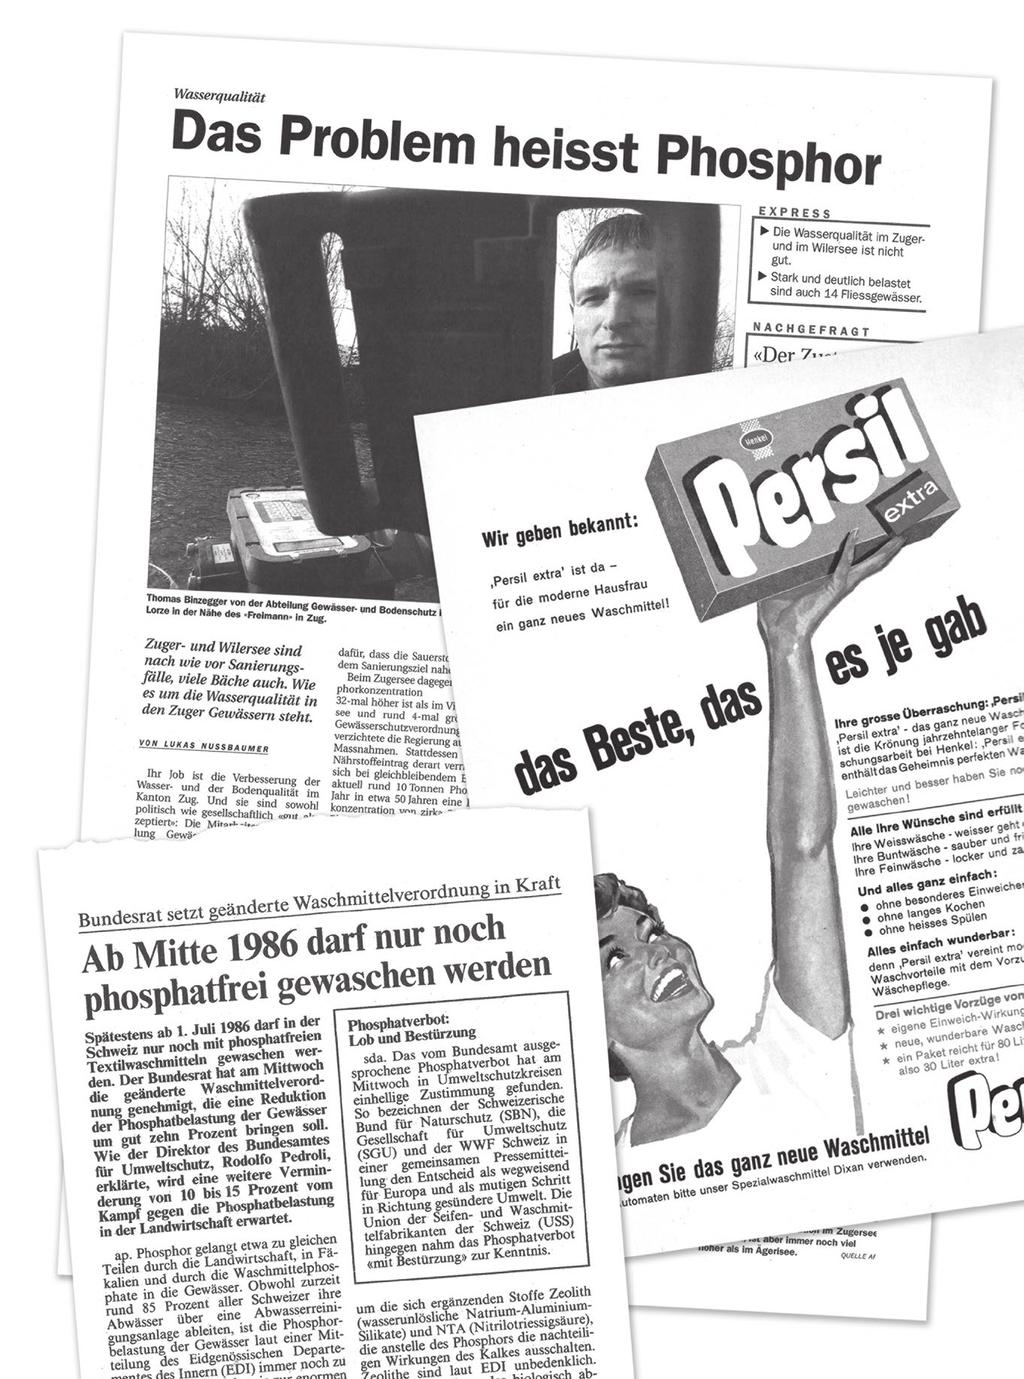 Neue Zuger Zeitung, 9. Januar 2004 Das Phosphat-Problem Phosphate sind Salze der Phosphorsäure.